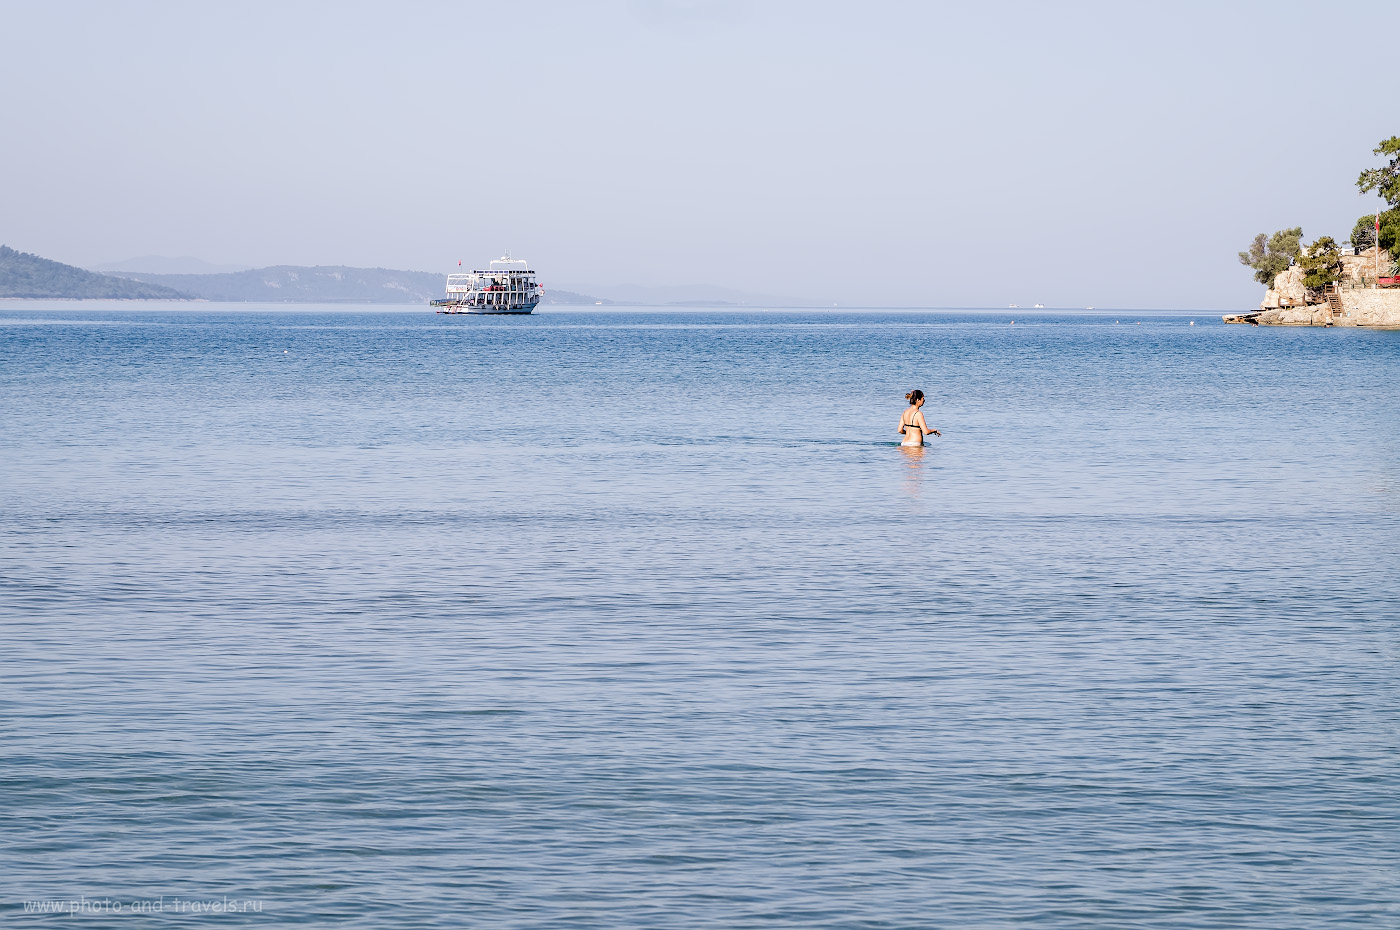 26. Море в Акьяке отлично подходит для купания детей. Даже вдали от берега глубина ниже пояса взрослого человека. 1/180, 8.0, 200, +1.67, 55.